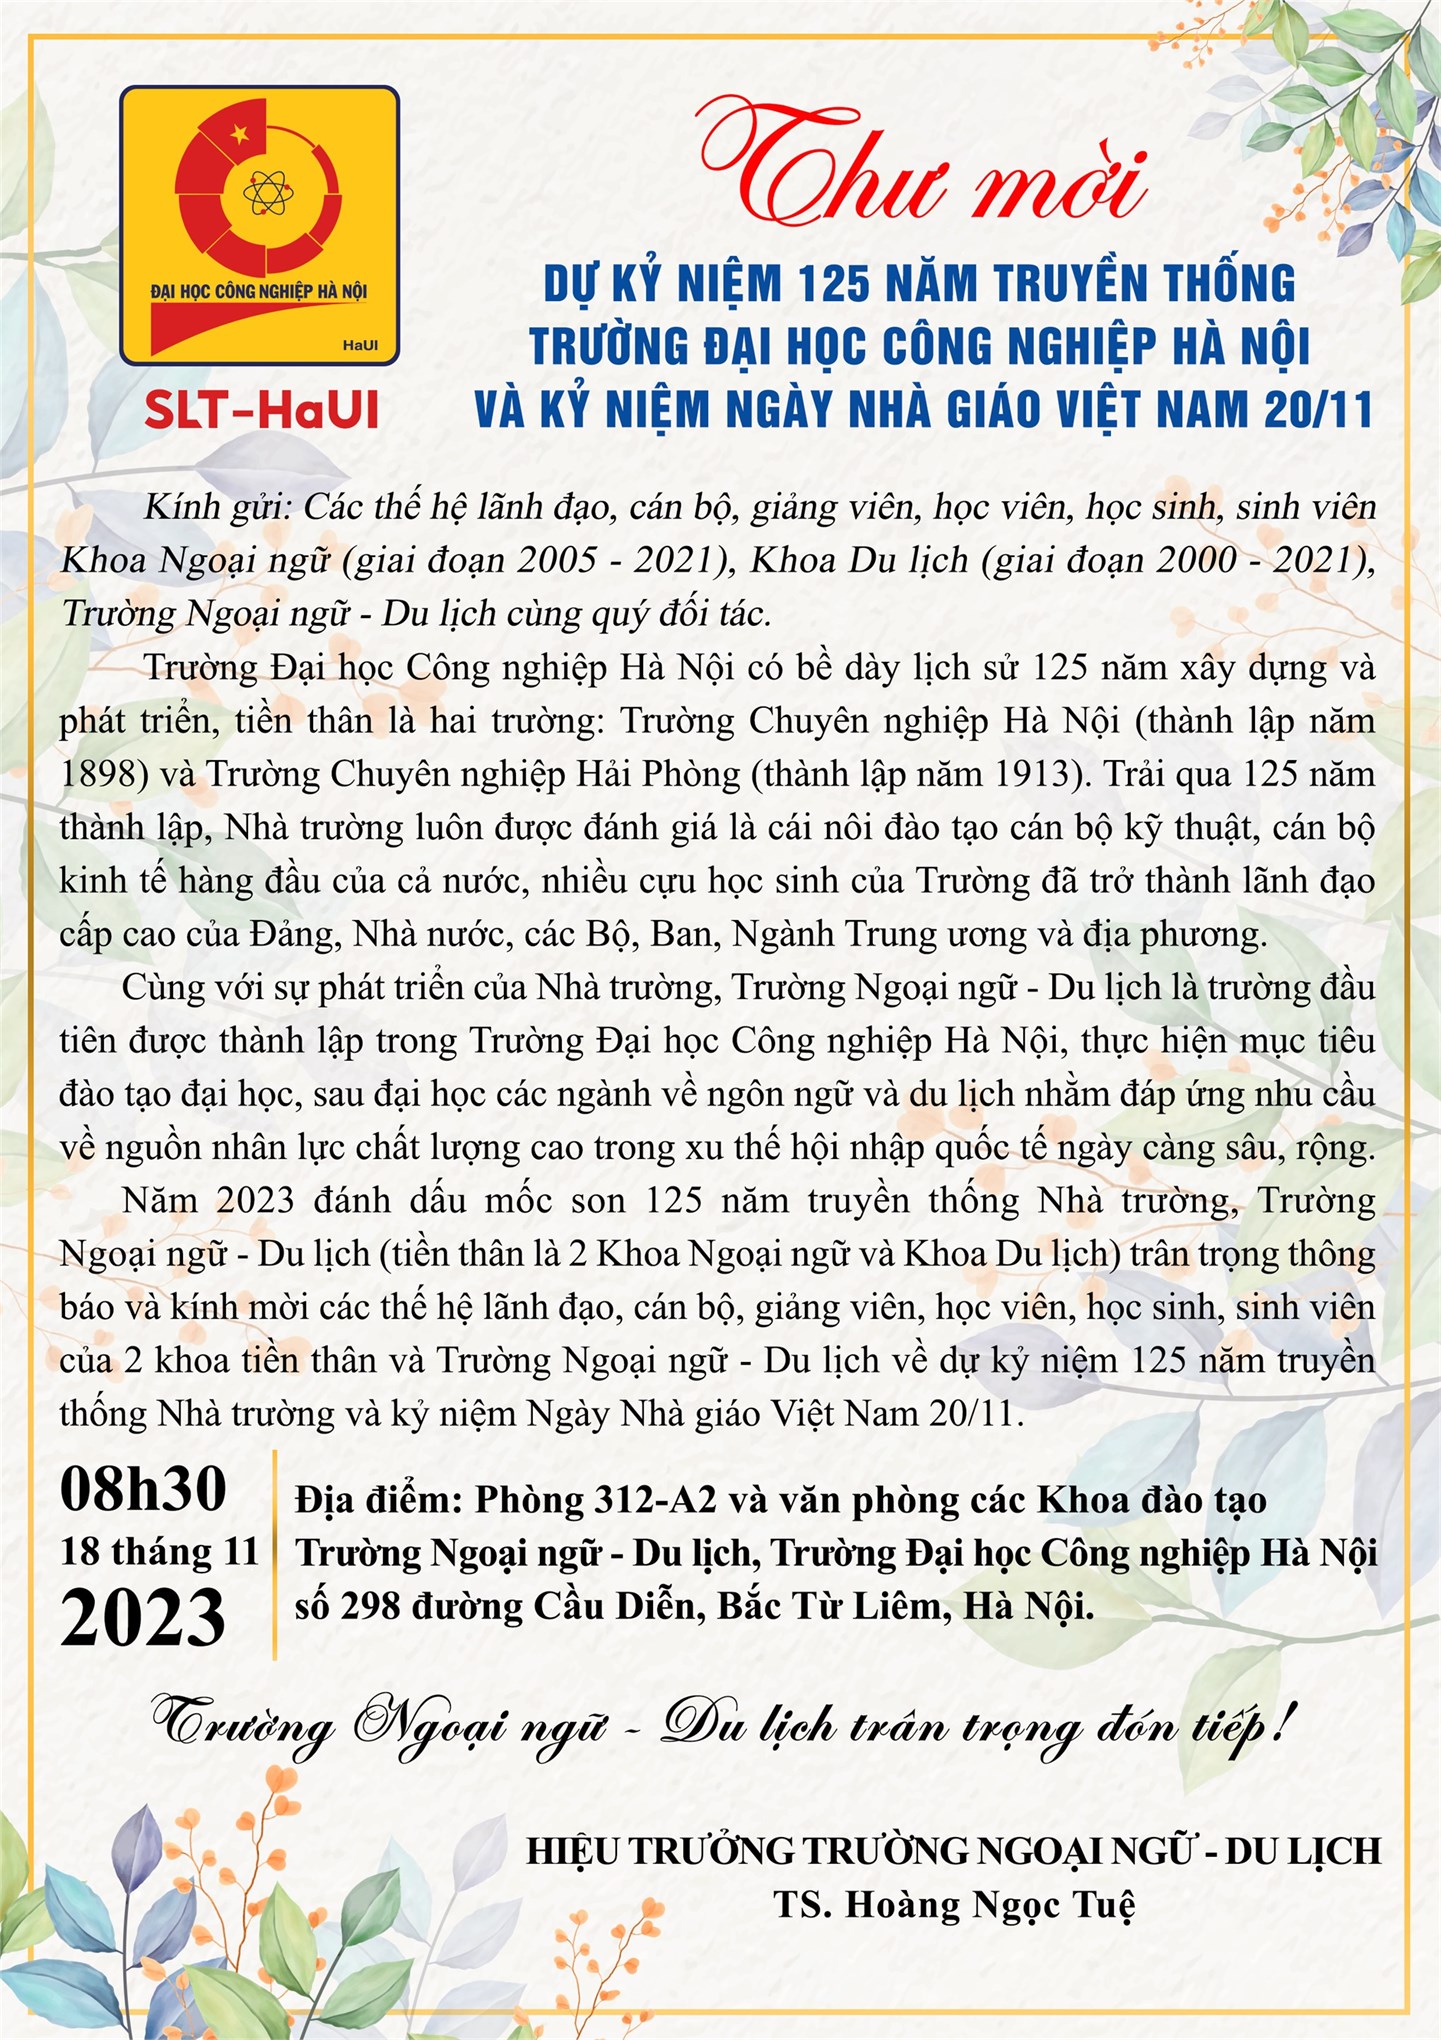 Thư mời dự Kỷ niệm 125 năm truyền thống Trường Đại học Công nghiệp Hà Nội và Kỷ niệm Ngày Nhà giáo Việt Nam 20/11.